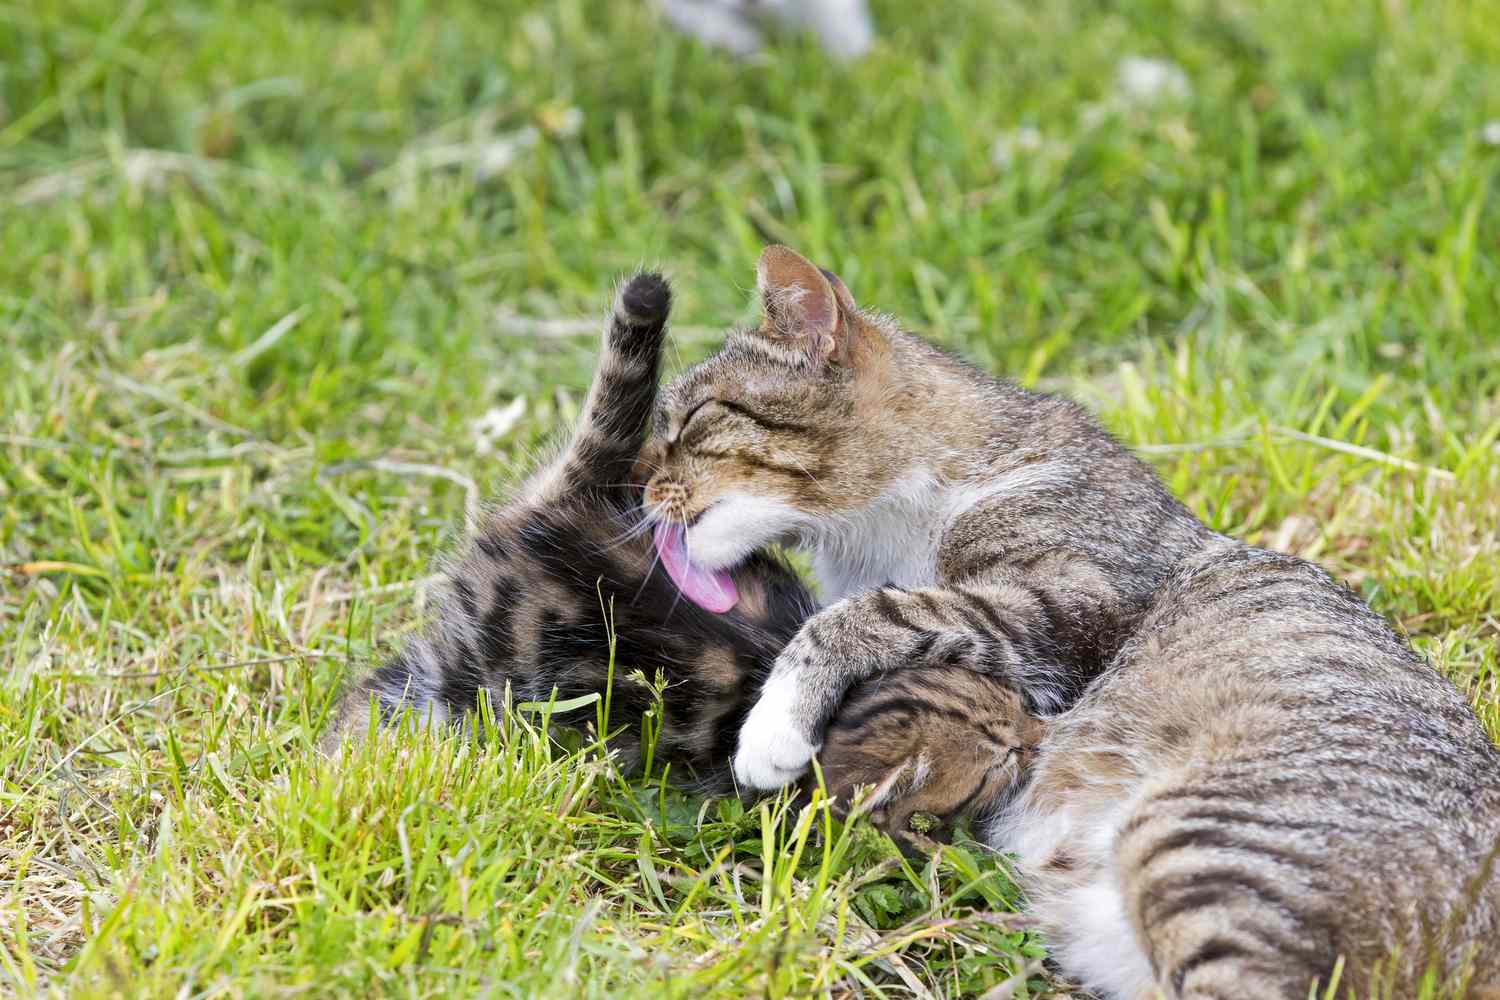 TabTabby mother cat nursing a kitten in grass